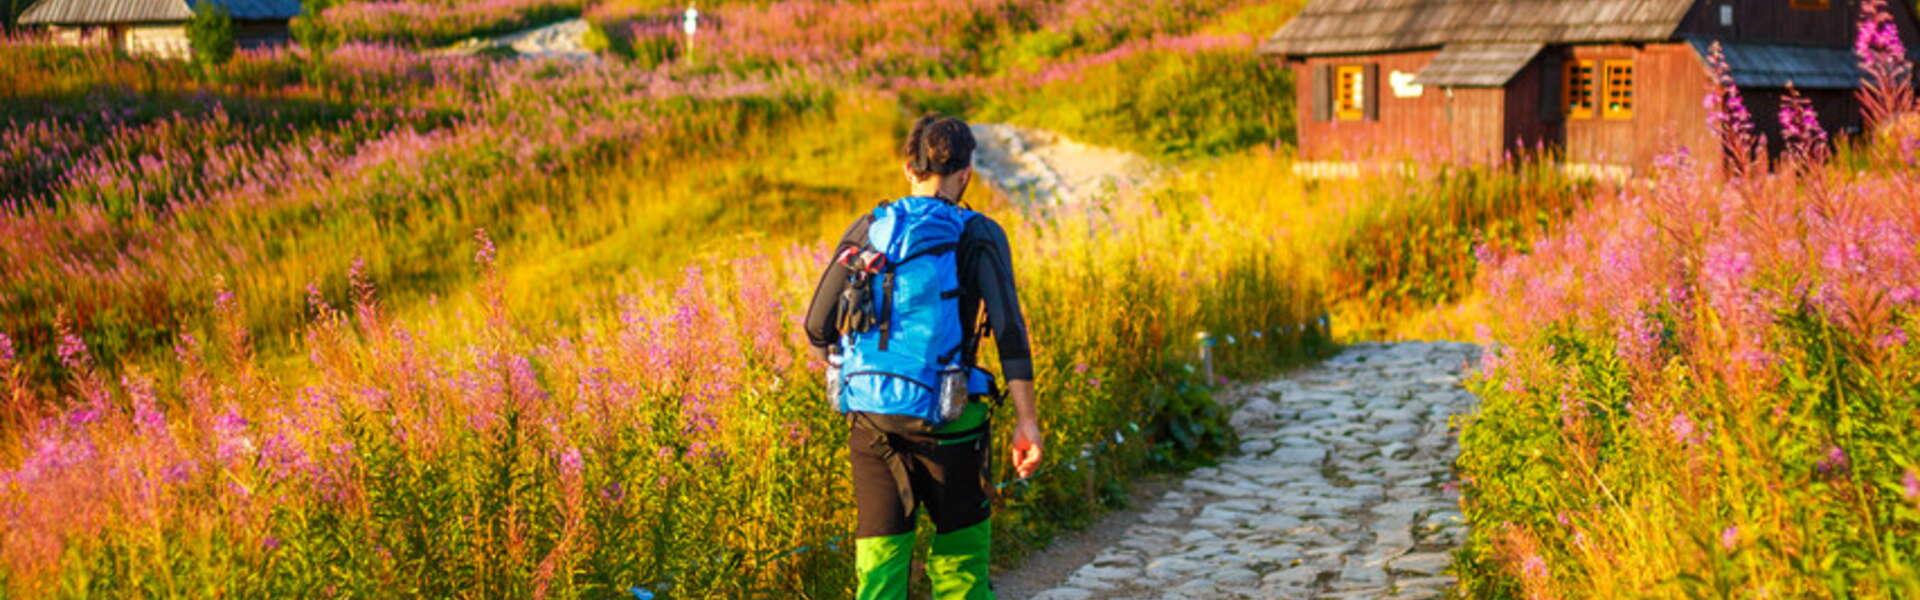 Widok na osobę z plecakiem na plecach spacerującą po kamiennej ścieżce. W okół roślinność a w tle góry.